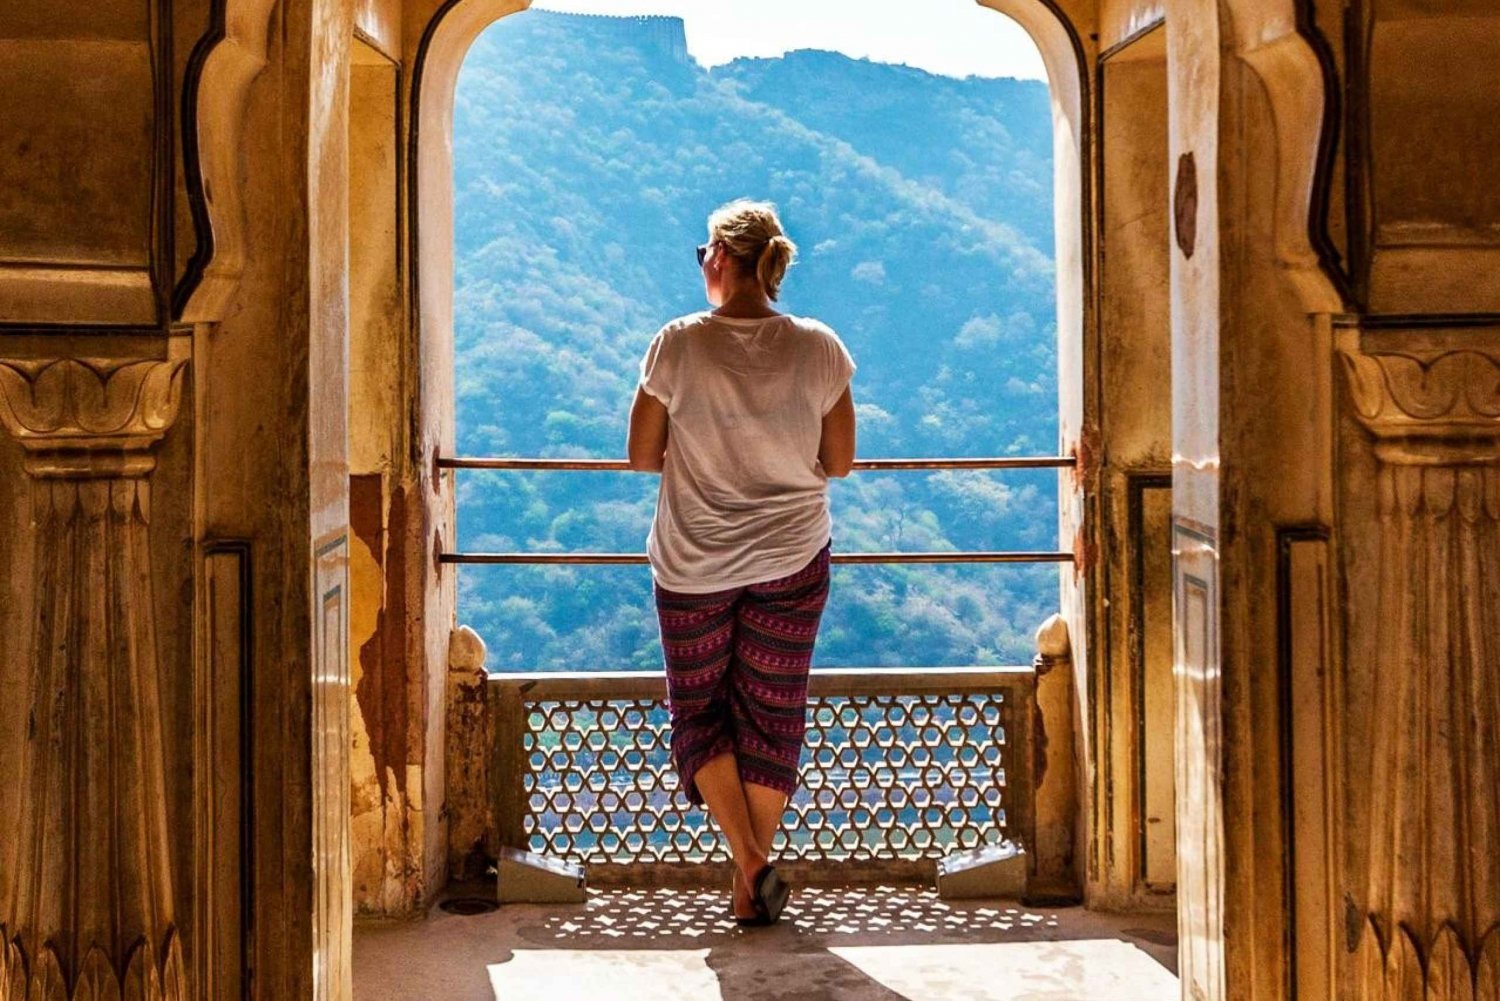 Jaipur: Tour privado no Instagram pelos melhores pontos de fotografia